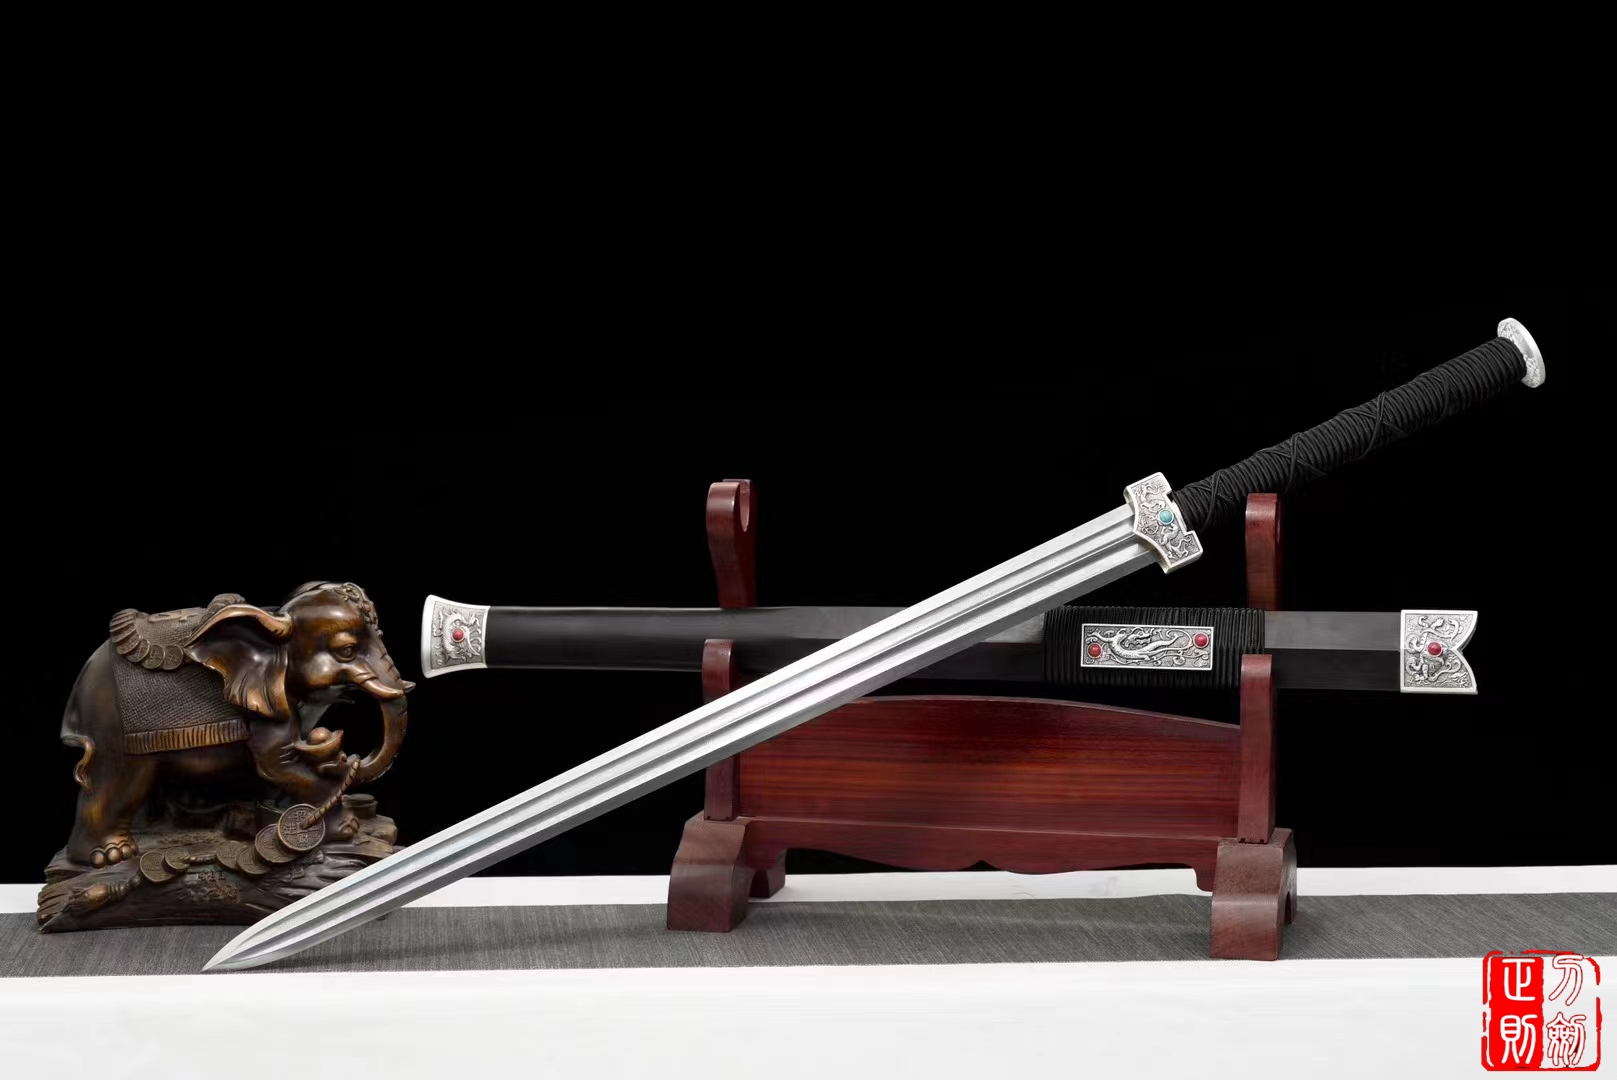 汉四兽双樋汉剑|花纹钢sword|中国汉剑,汉剑,汉剑图片